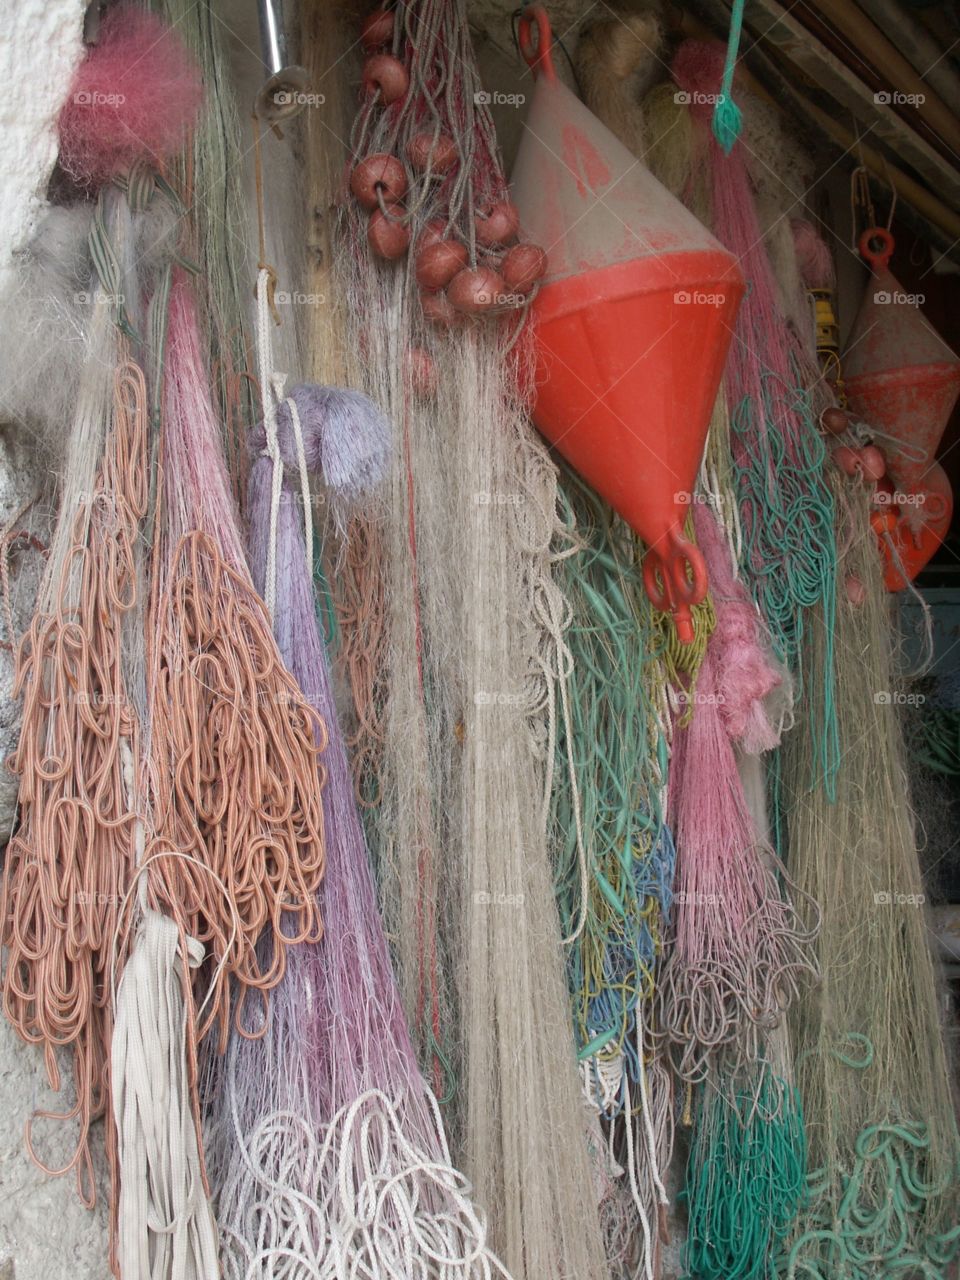 fisherman's net